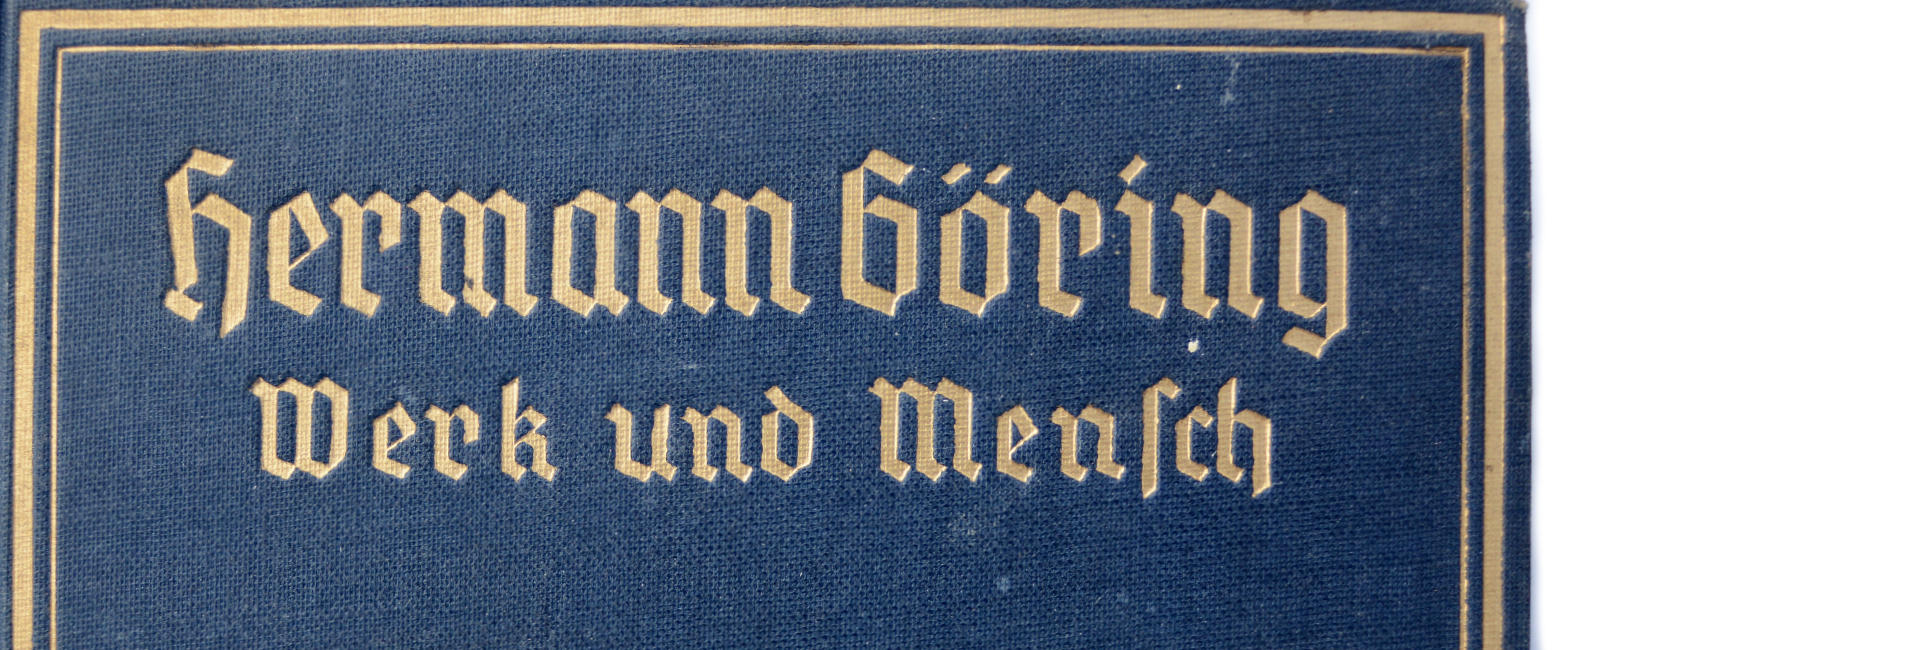 München, 1940 [Hermann Göring, Werk und Mensch]